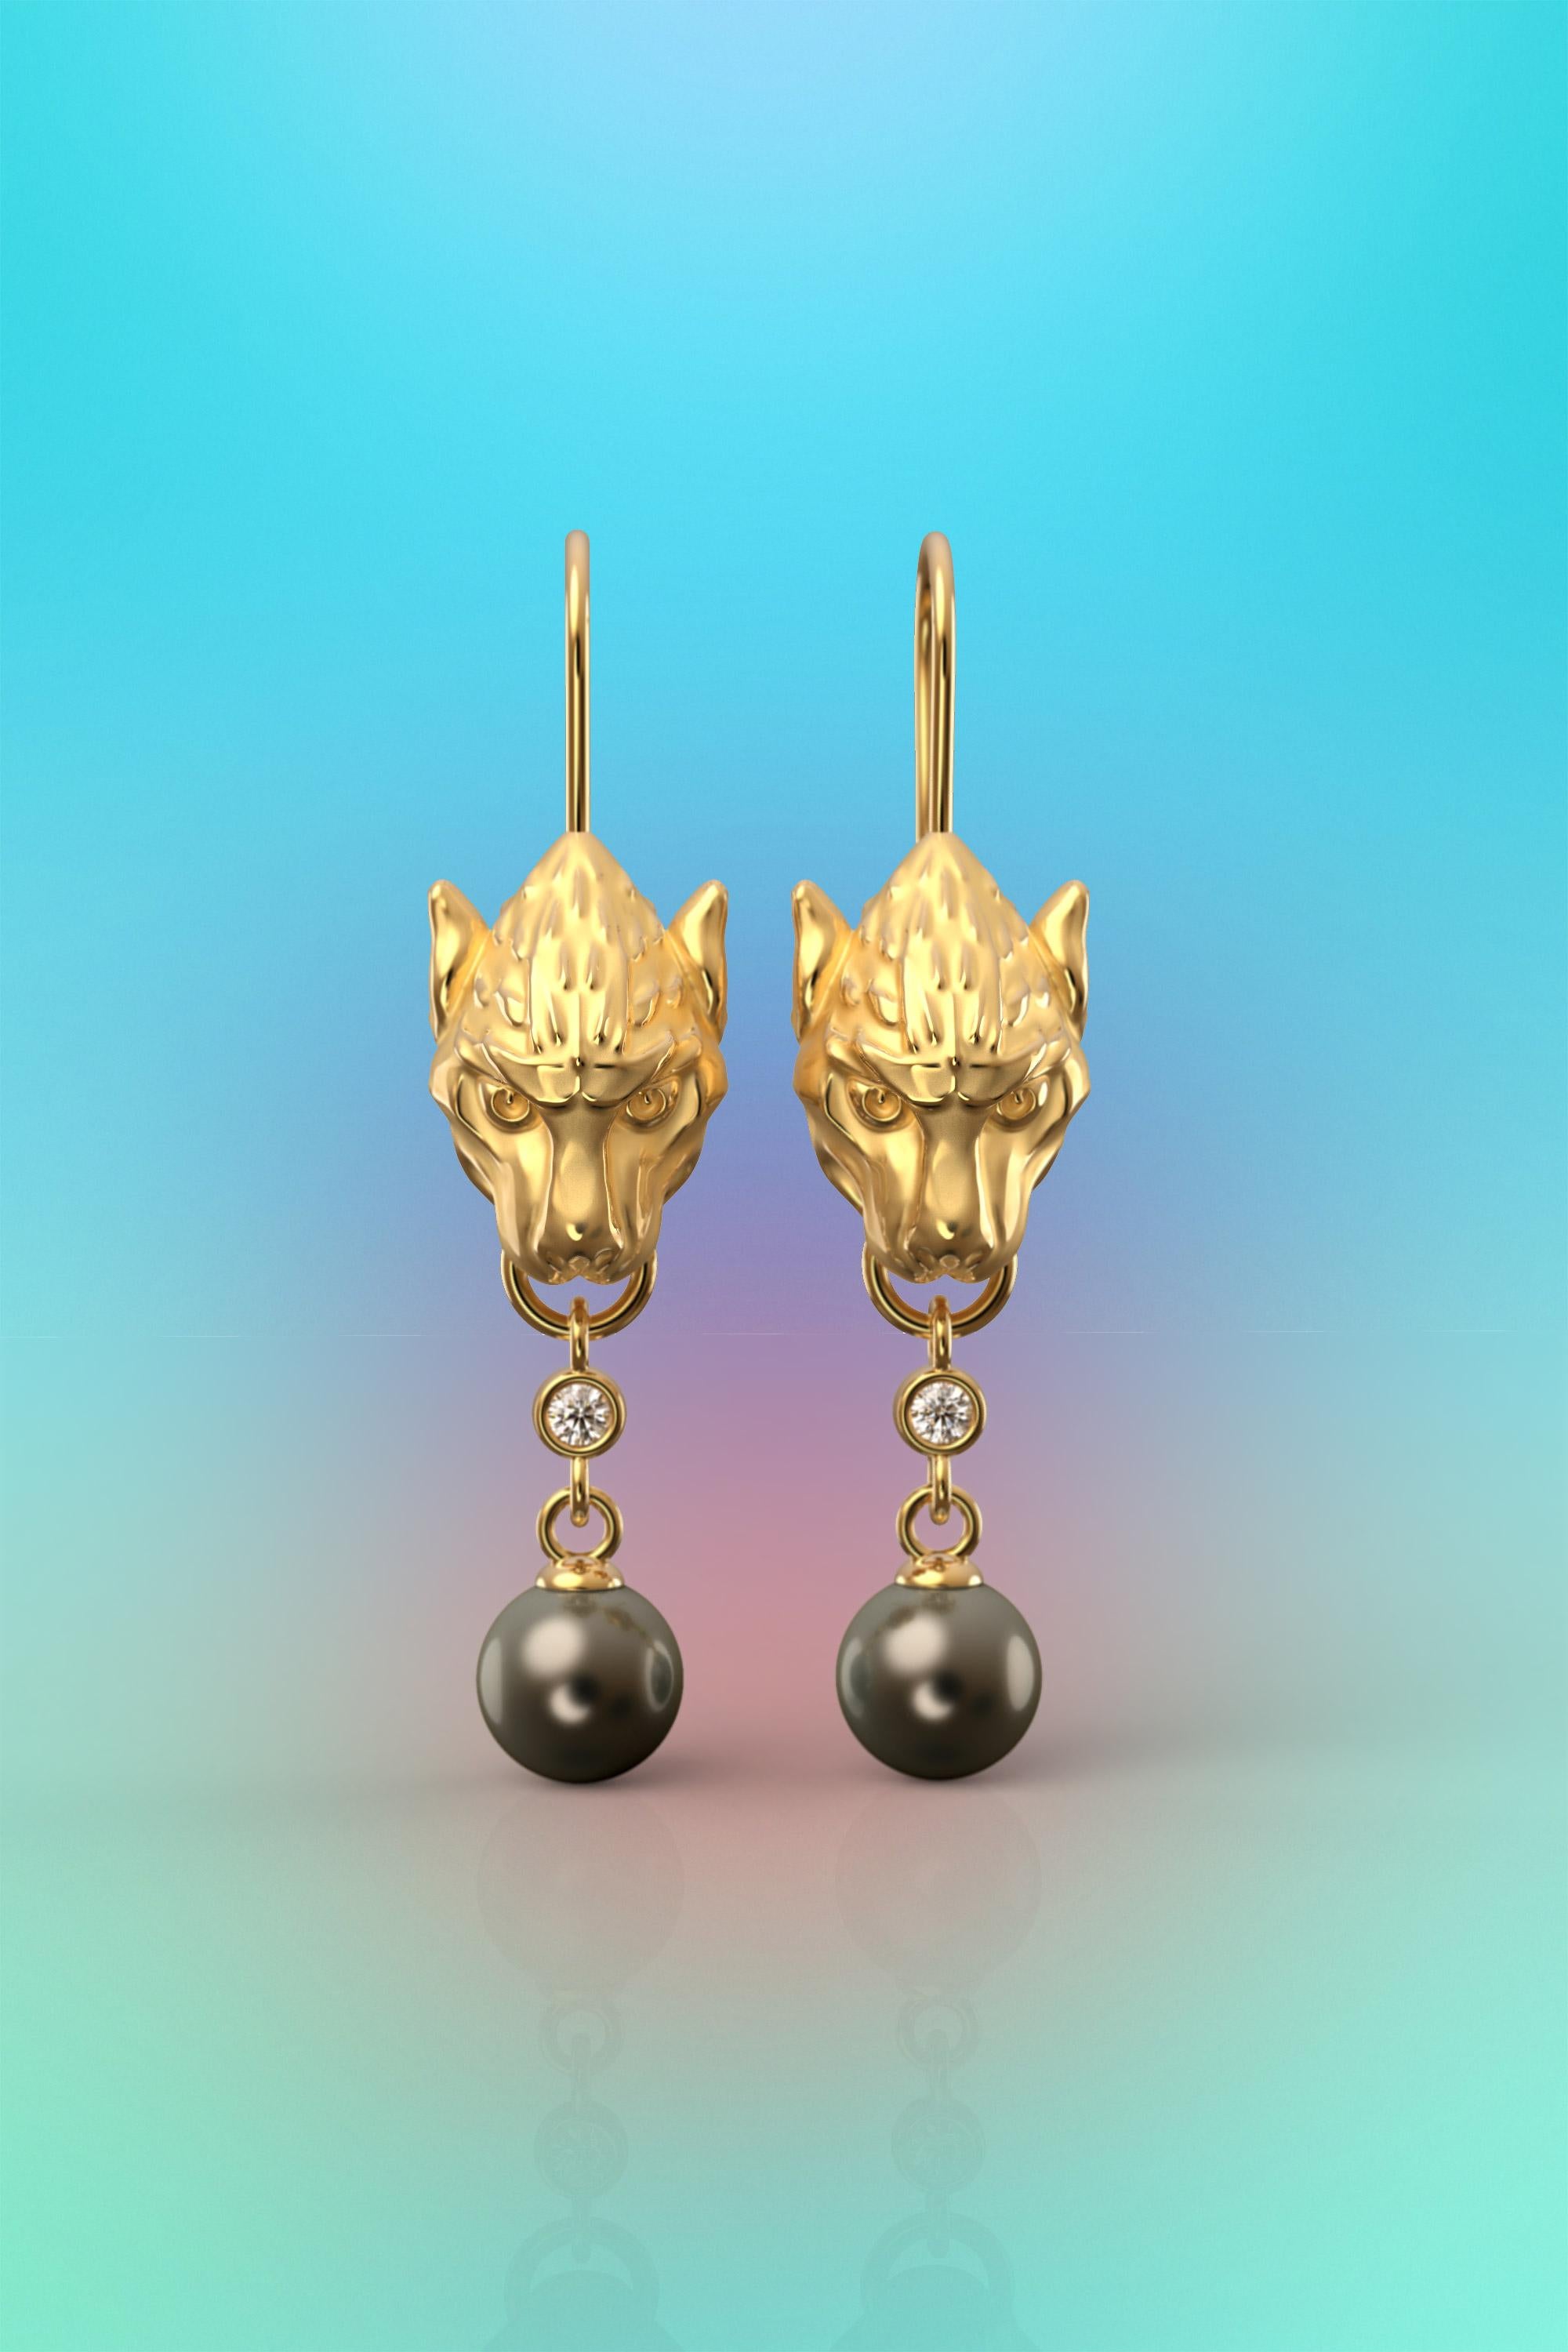 Skulpturale Ohrringe aus echtem 14-karätigem Gold mit natürlichen Tahiti-Perlen und natürlichen Diamanten, die auf Bestellung gefertigt werden.
Wir präsentieren unsere exquisiten, von einem gotischen Wasserspeier inspirierten langen Ohrringe, bei